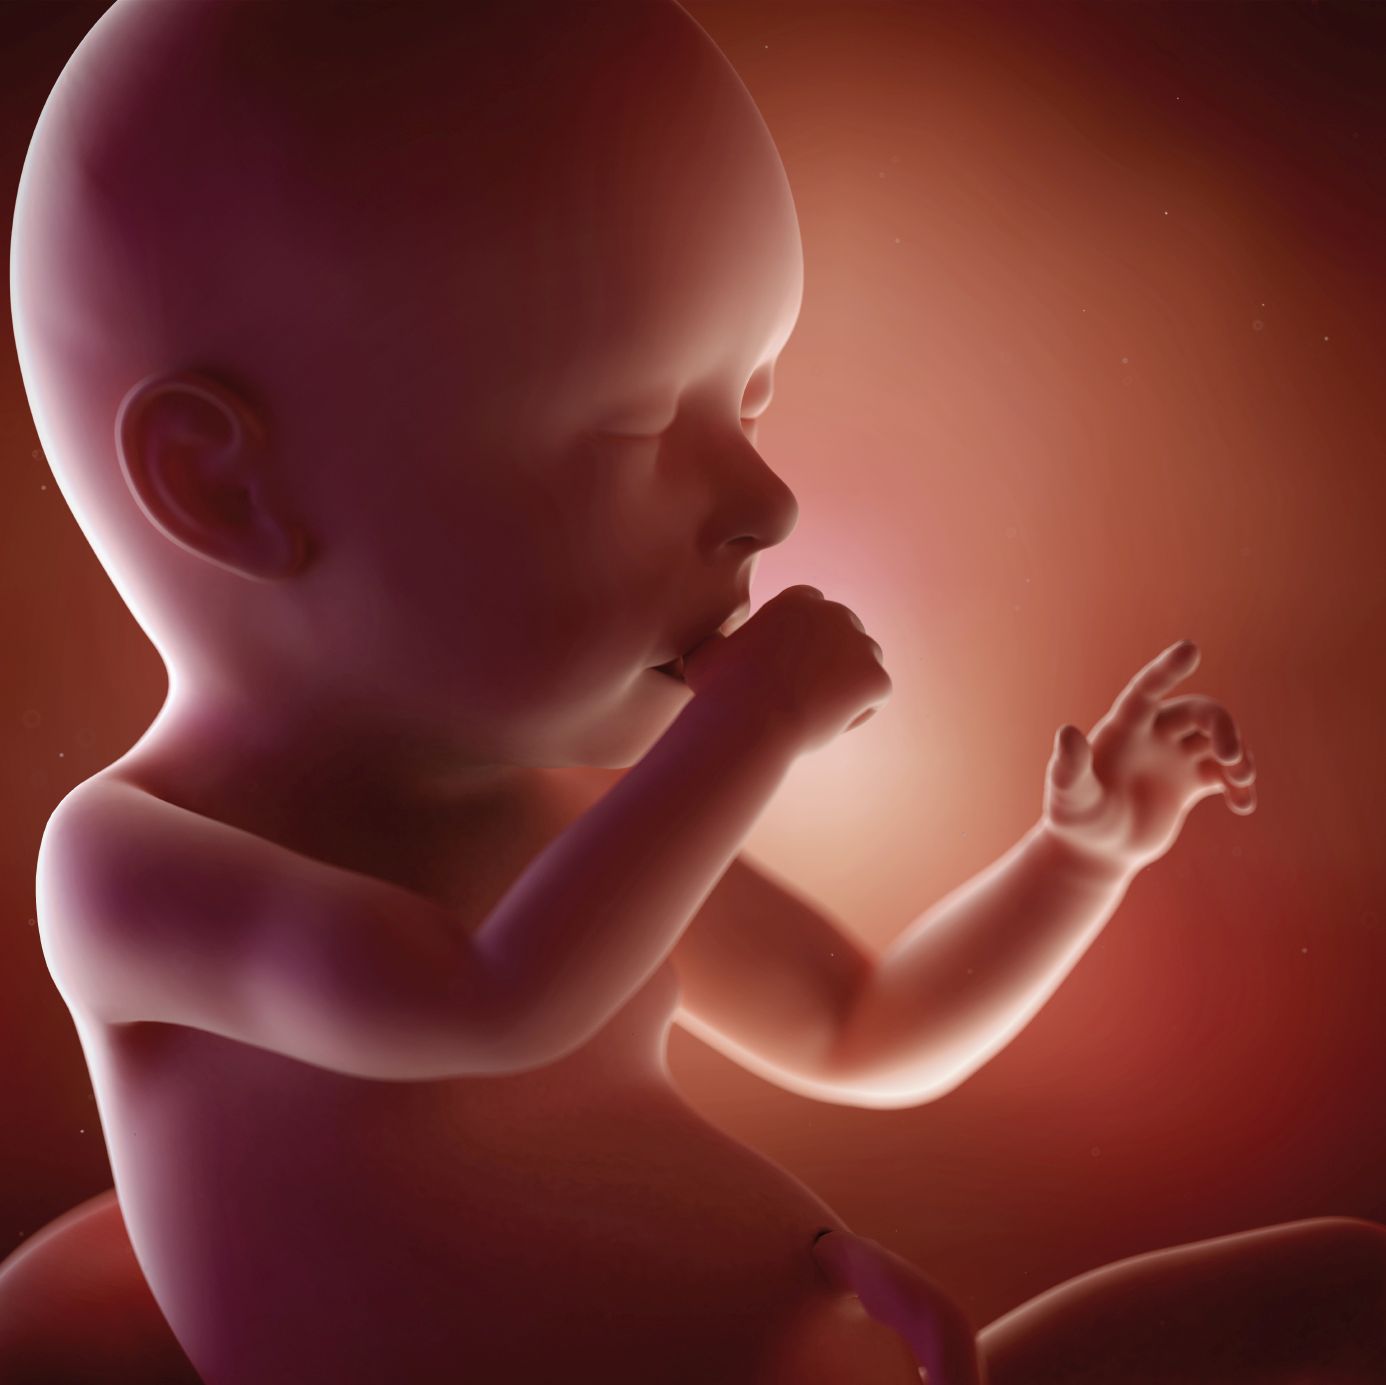 fetus 40 weeks